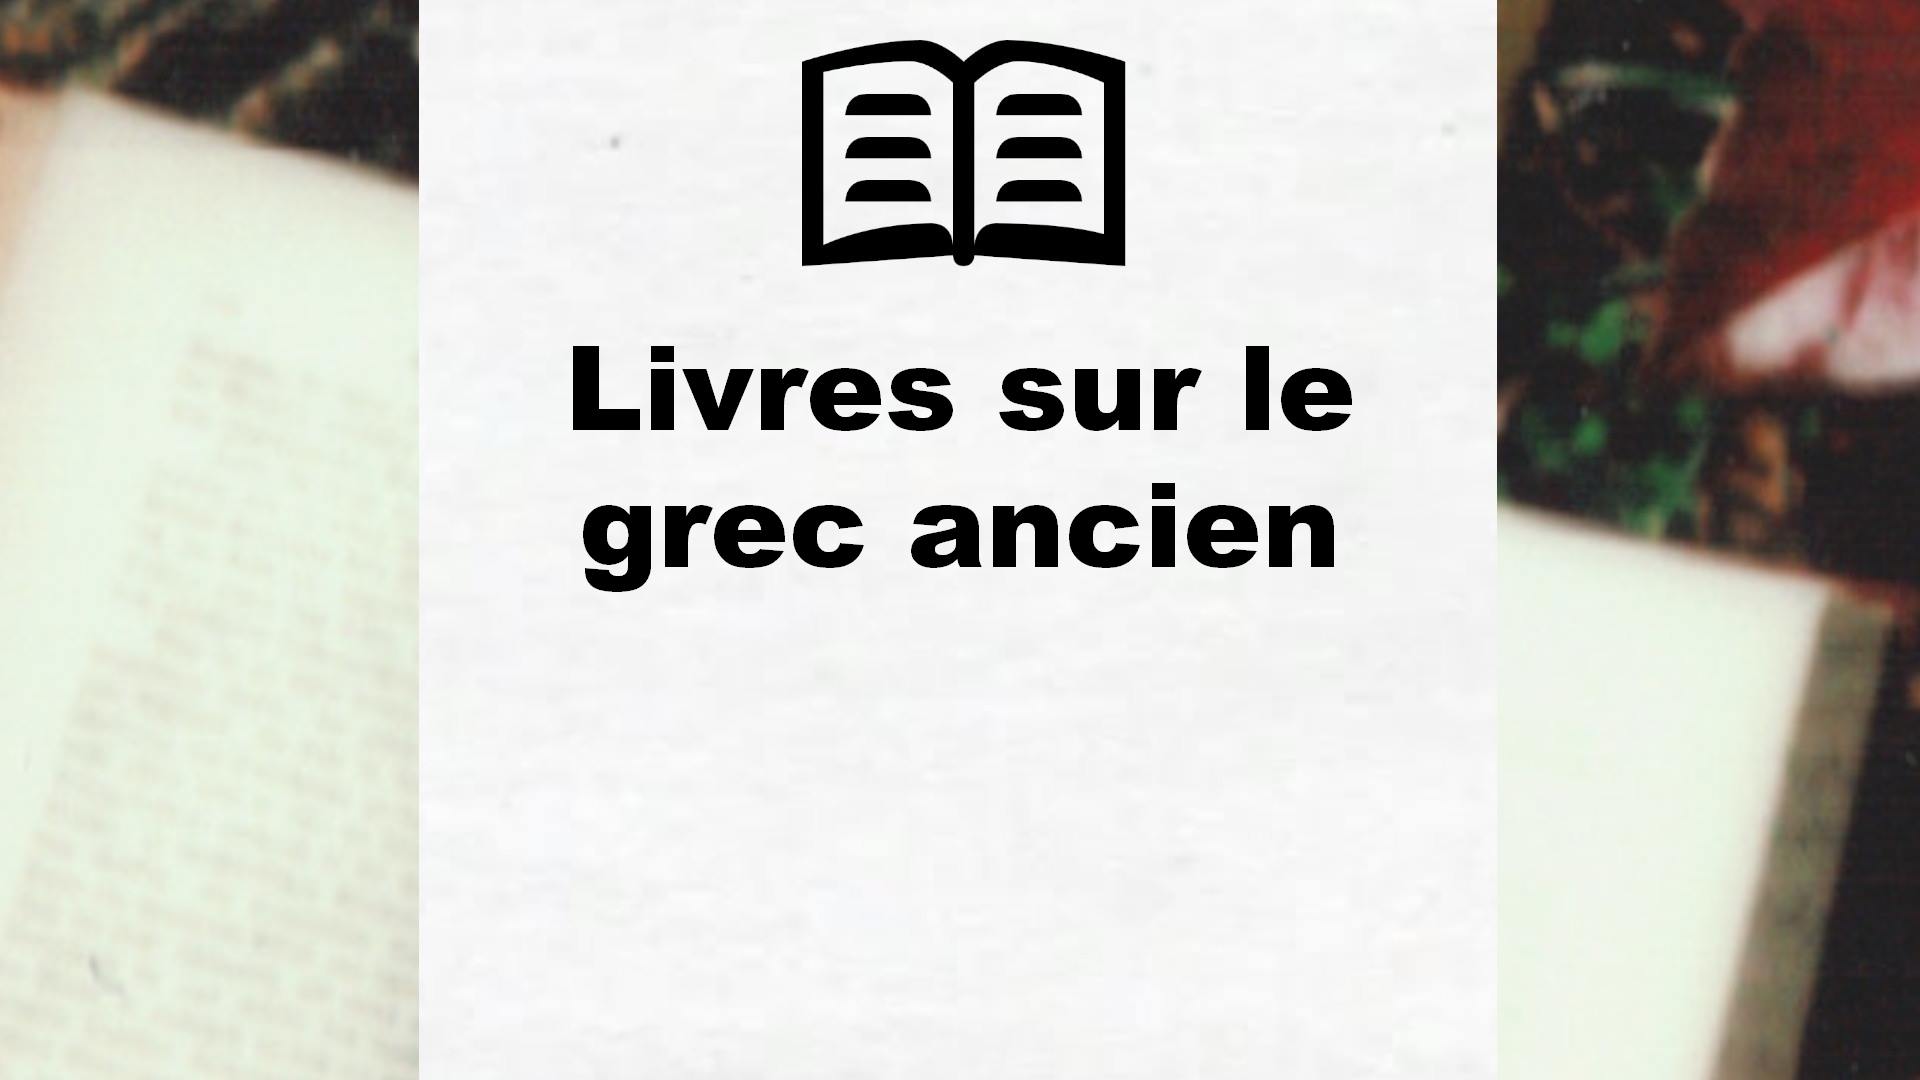 Livres sur le grec ancien